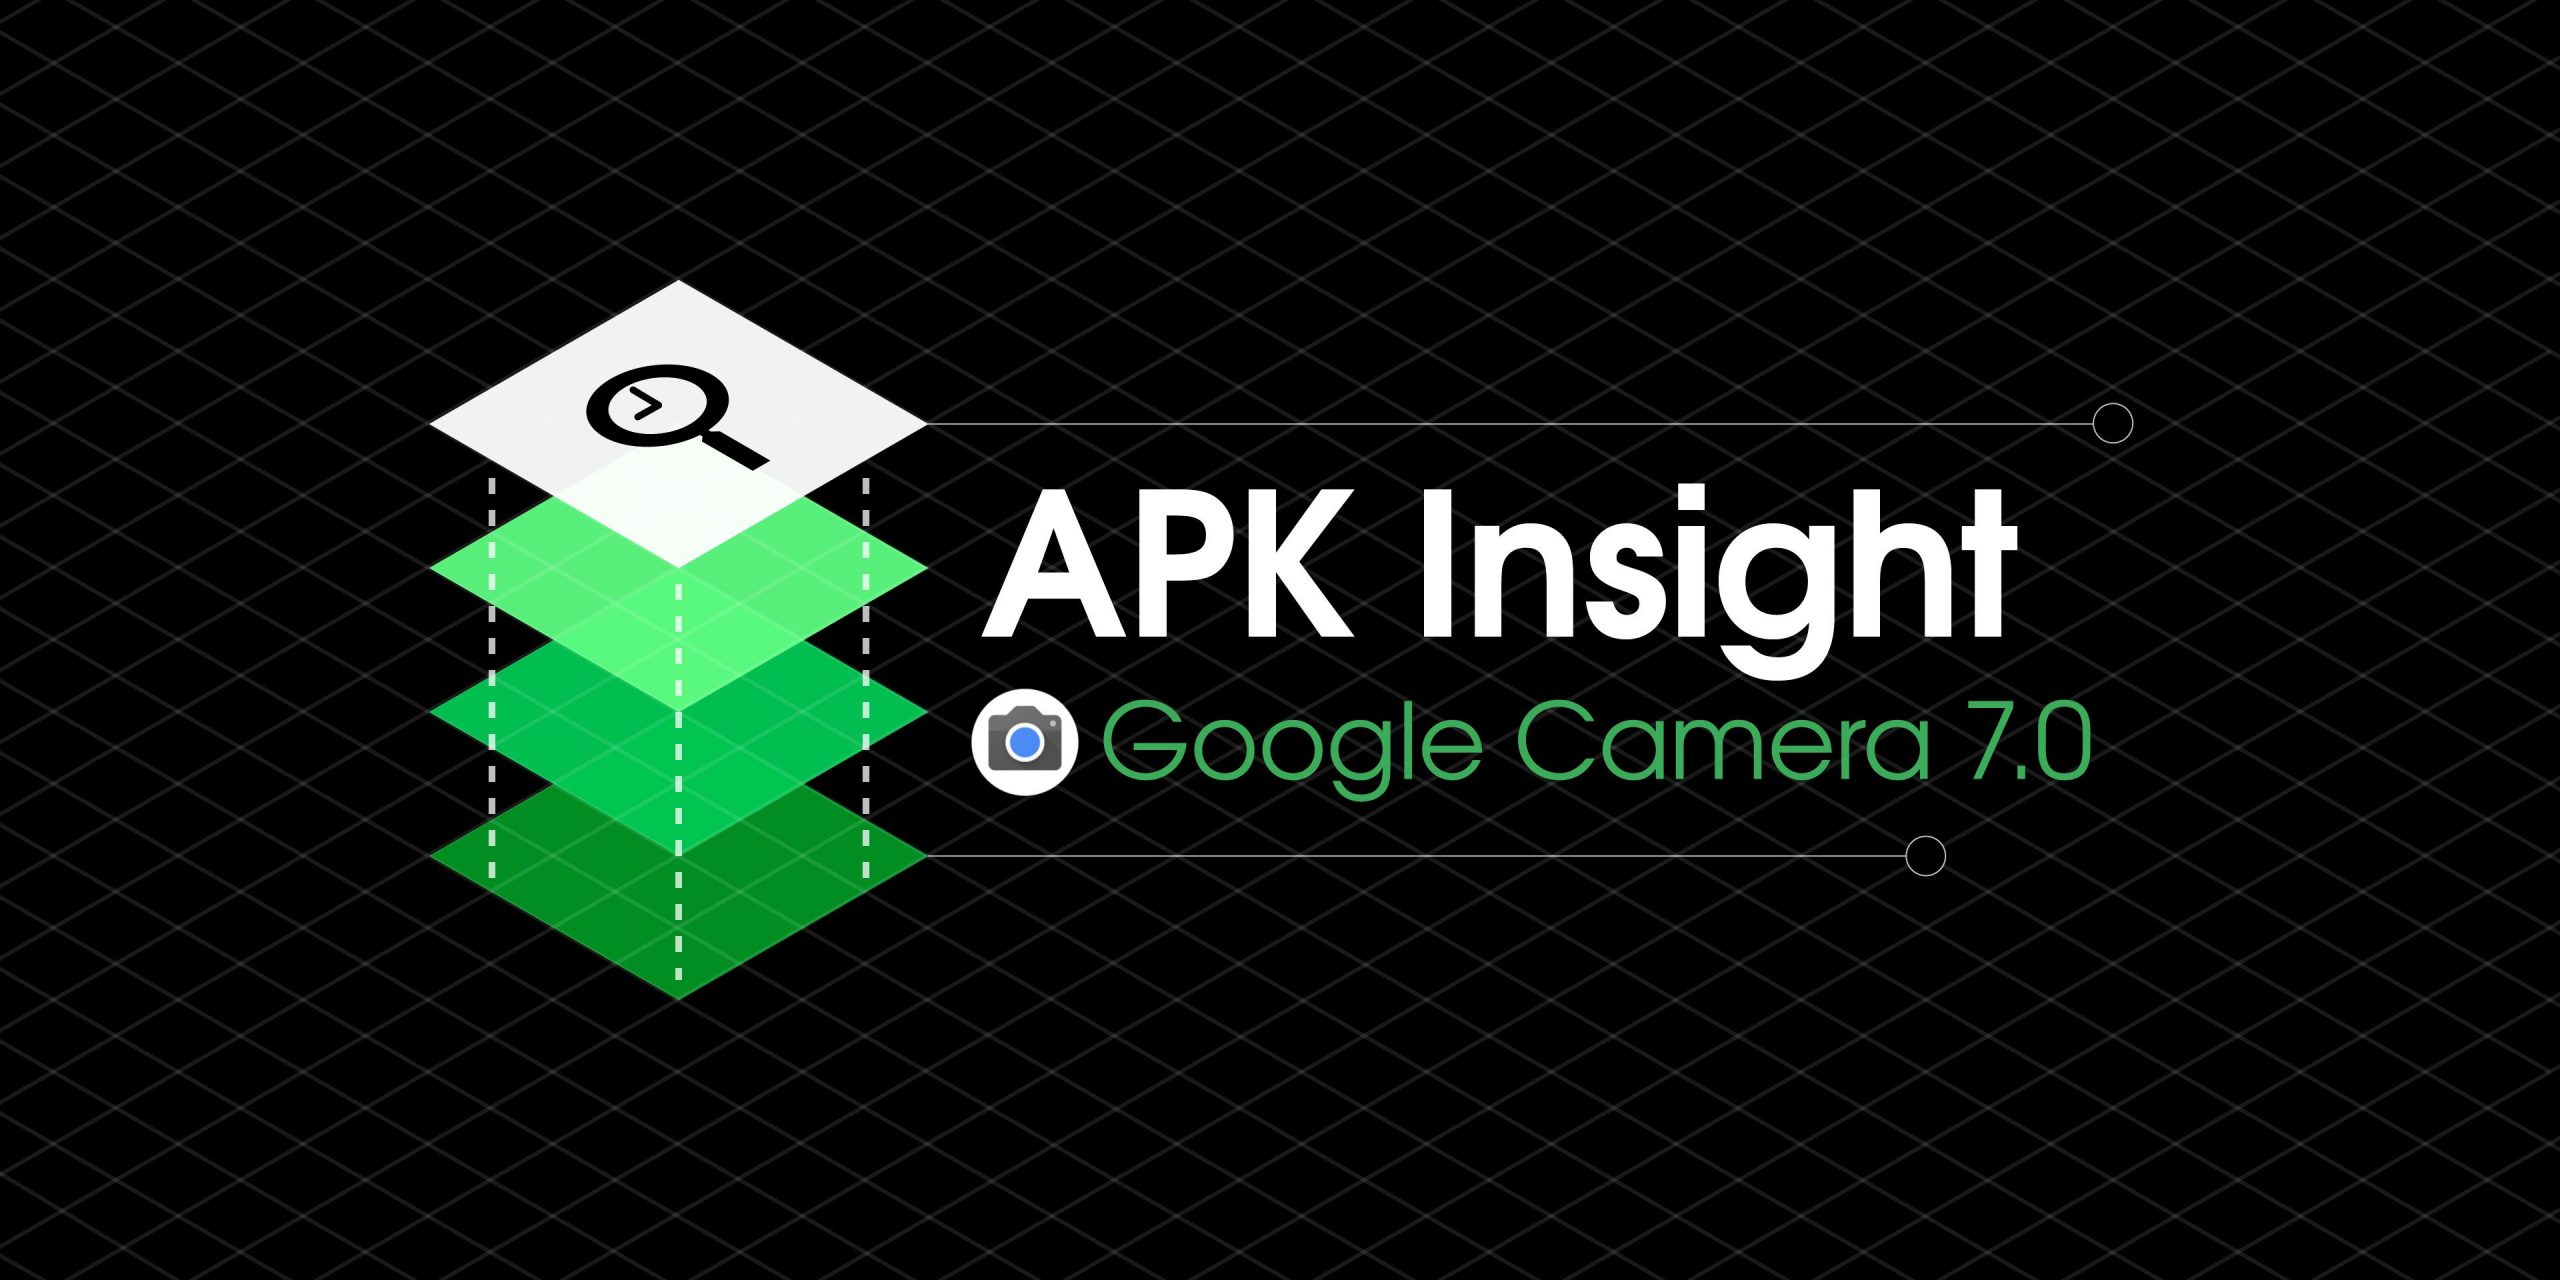 Câmera do Google 7.0 prepara Motion Blur, AR Photobooth e Audio Zoom [APK Insight]